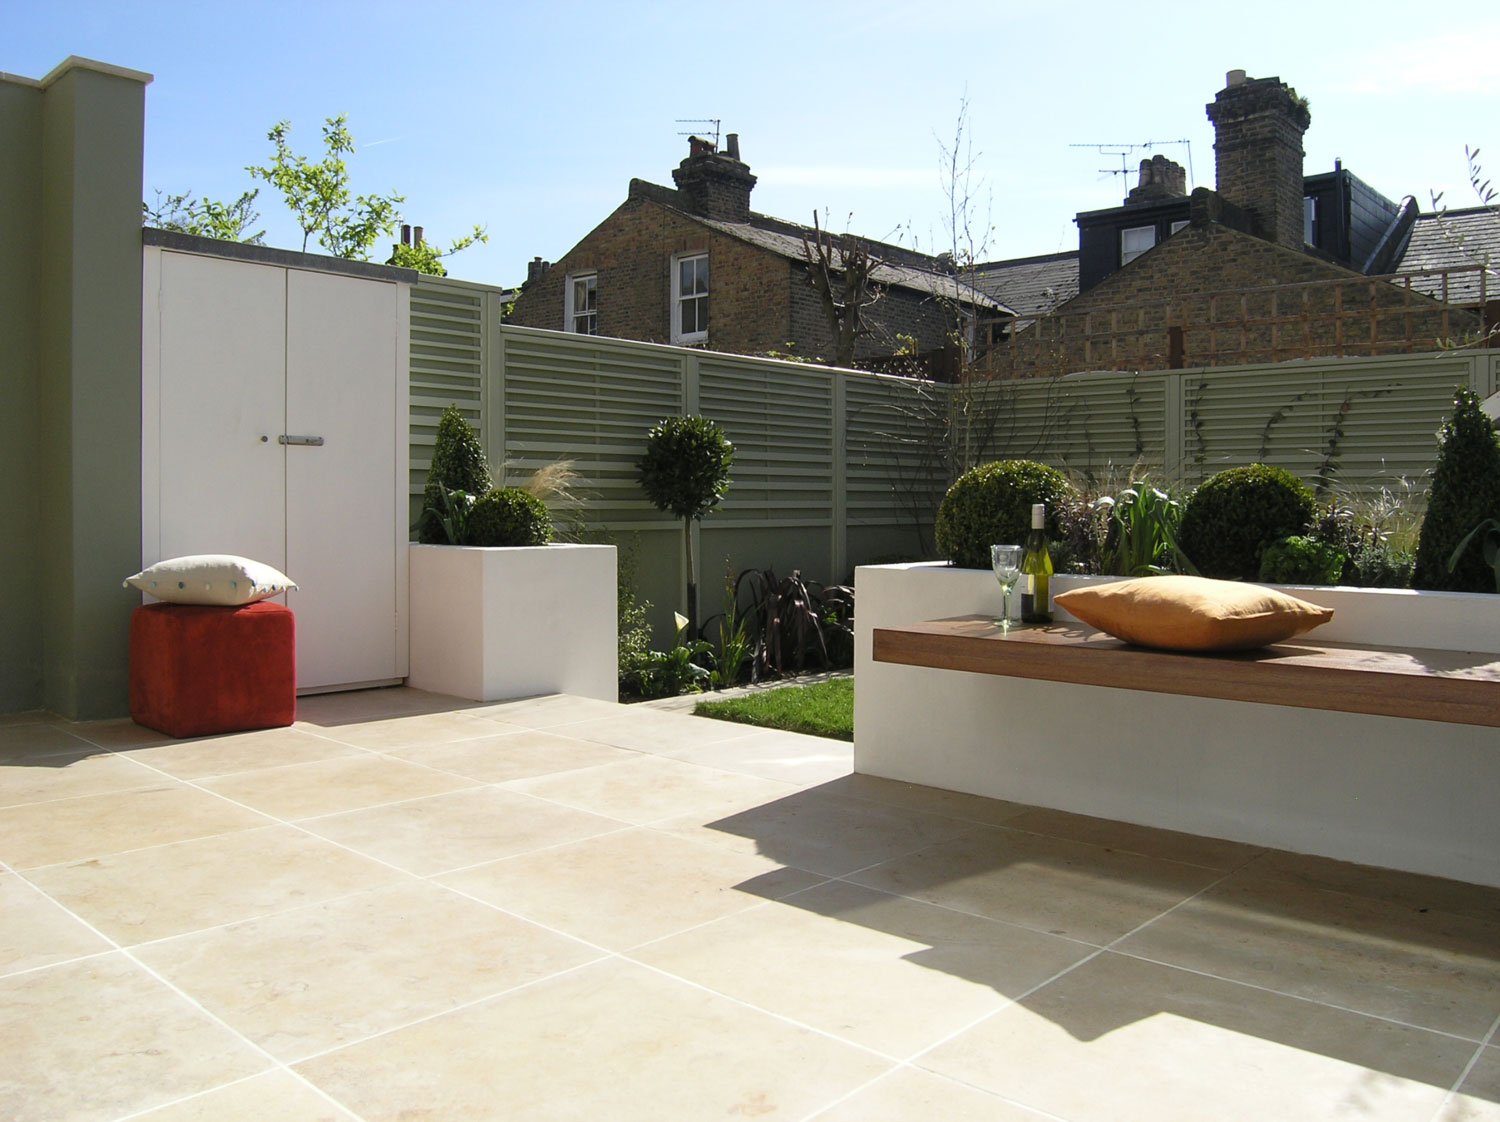  Limestone patio for al fresco dining in London square garden design. 